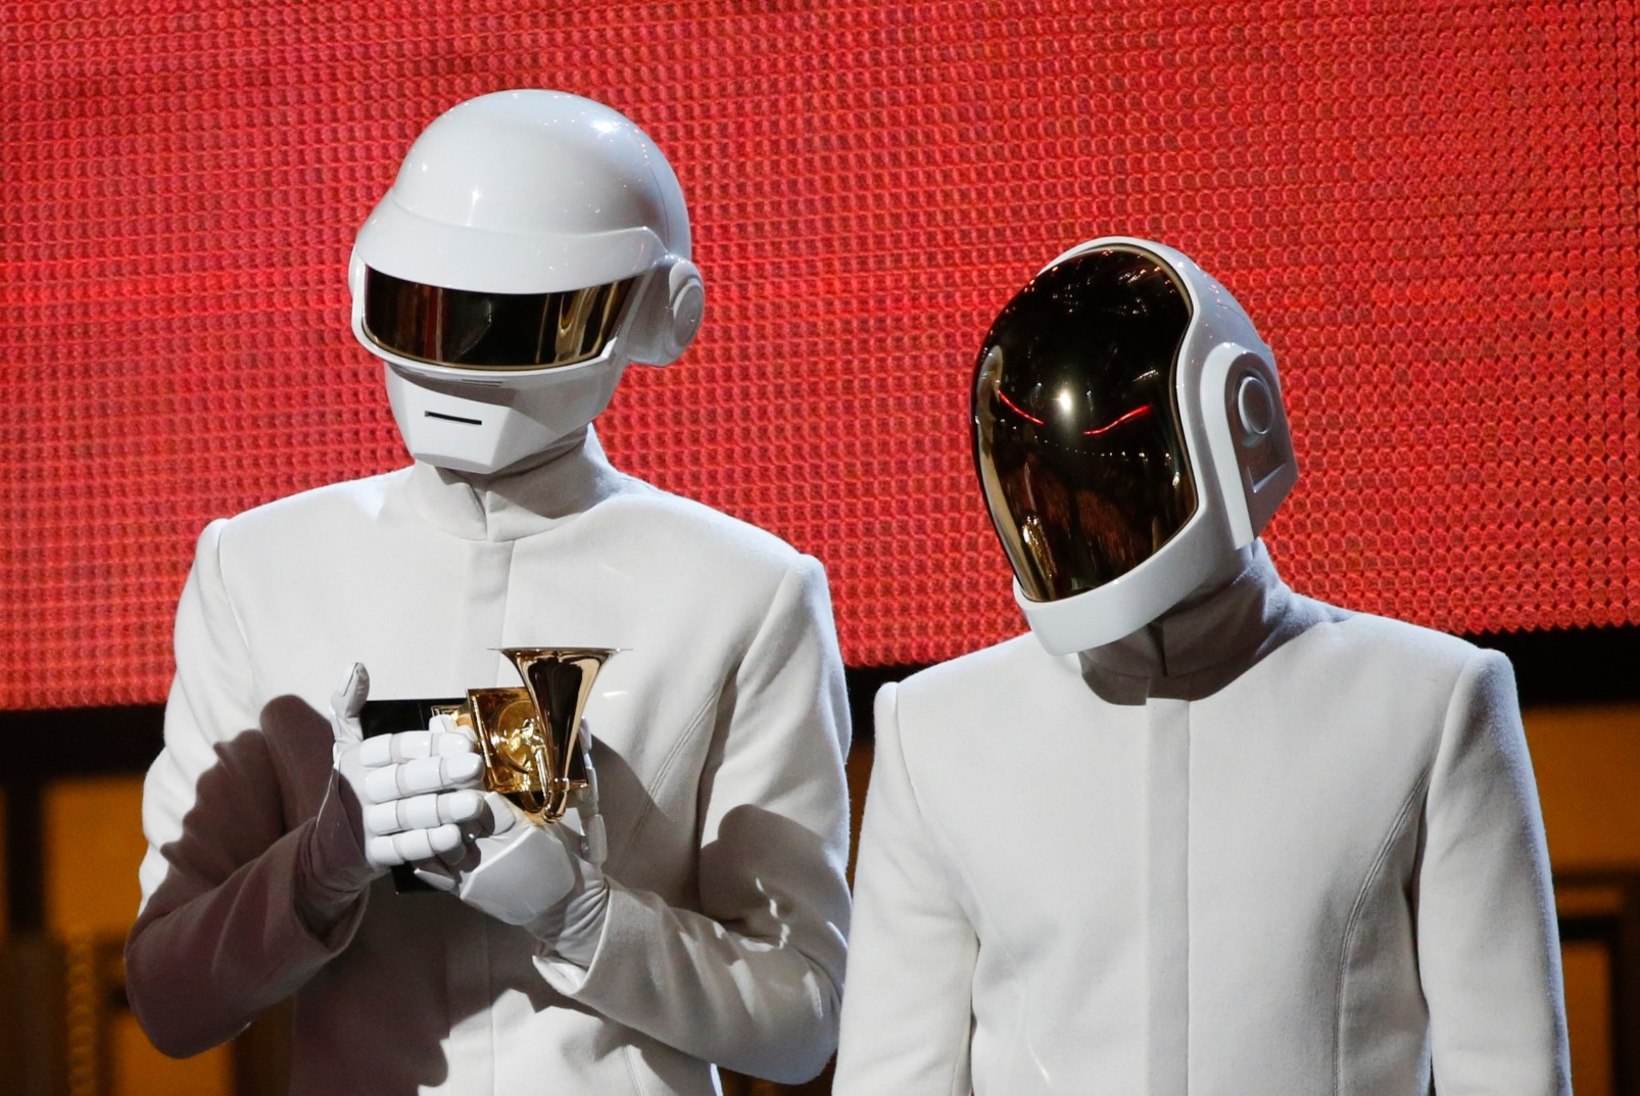 Prantsuse elektroduo Daft Punk läks 28 tegutsemisaasta järel laiali